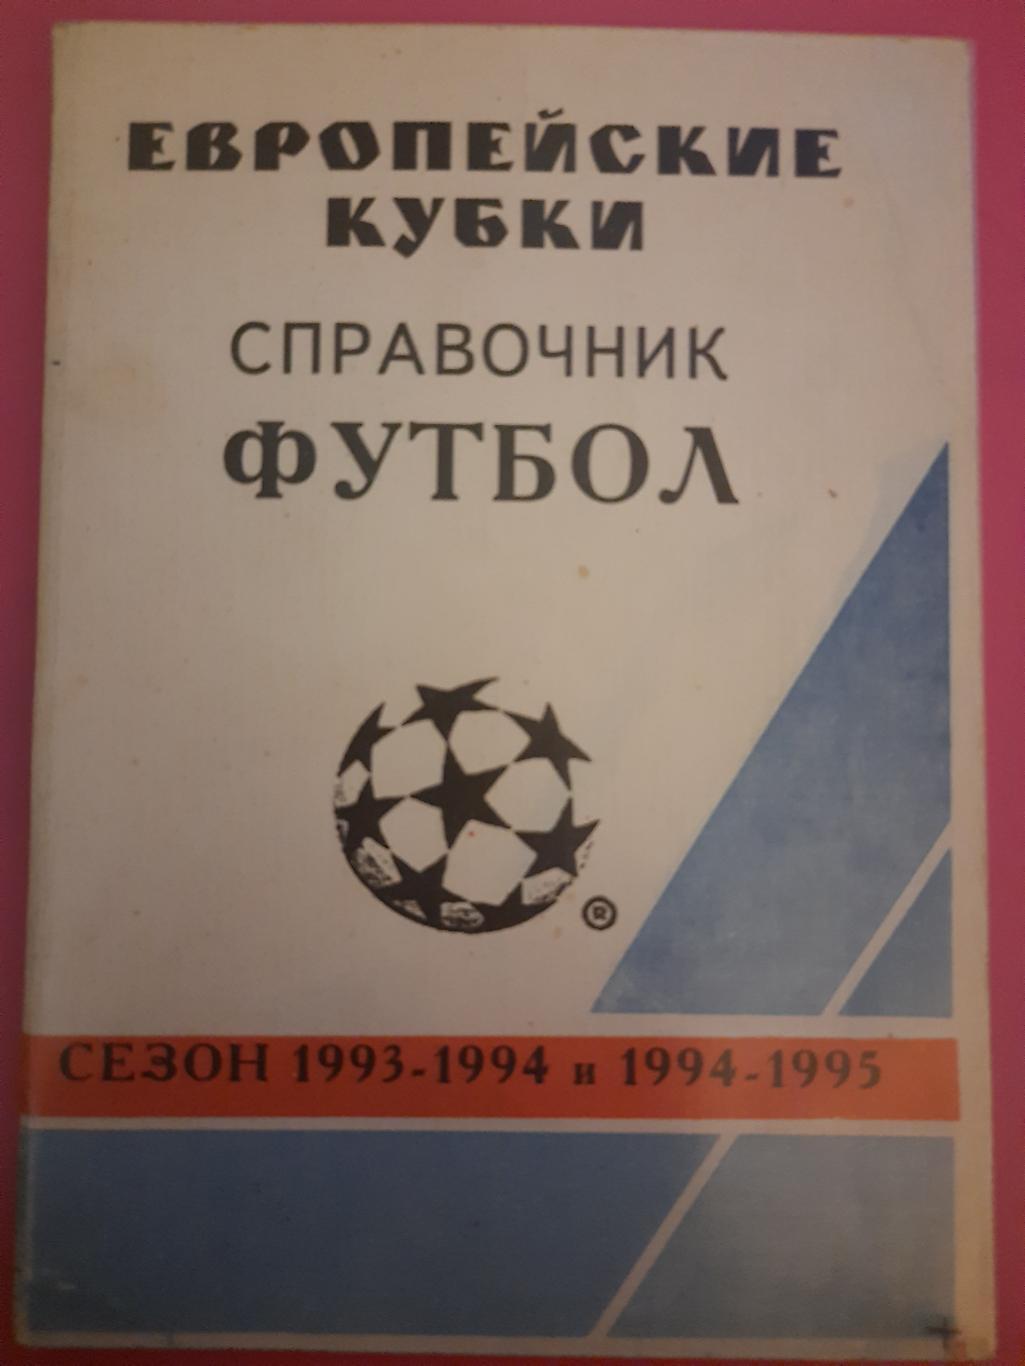 справочник футбол, Европейские кубки сезон 1993/94 и 1994/95